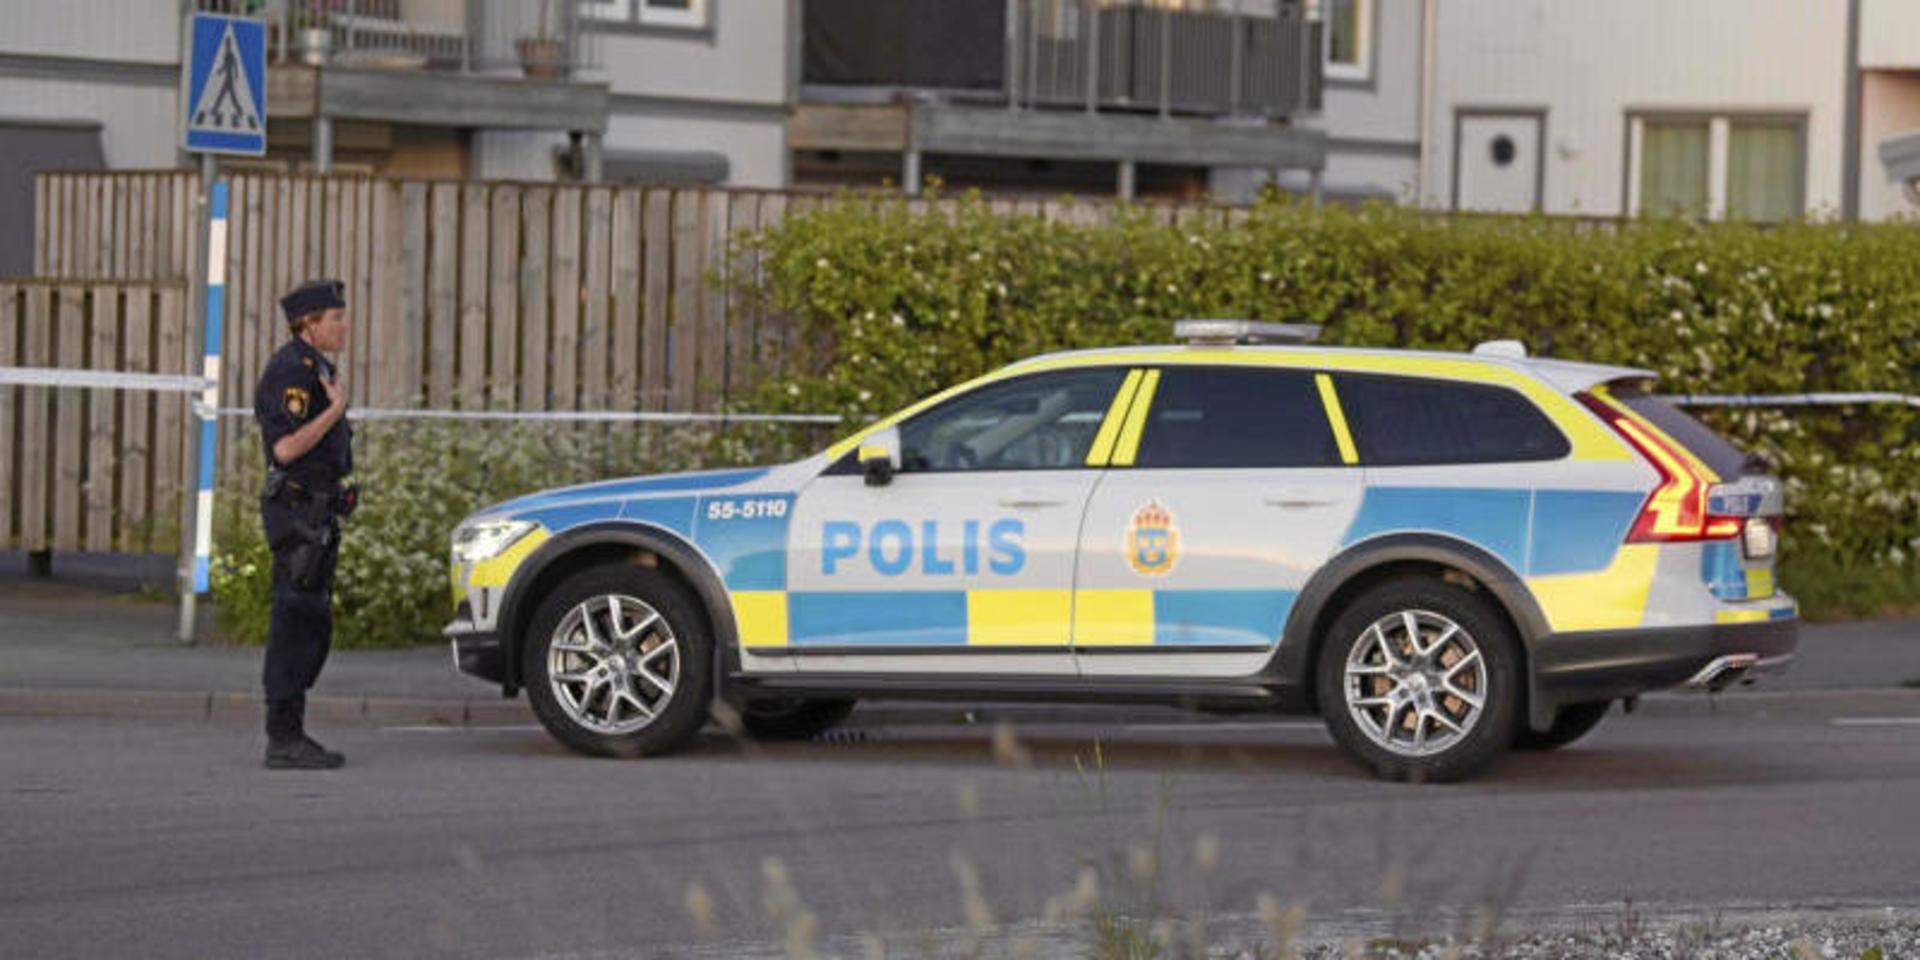 Tre personer knivhöggs på en pizzeria i Frillesås. 21-åringen dömdes till fängelse i två och ett halvt år.